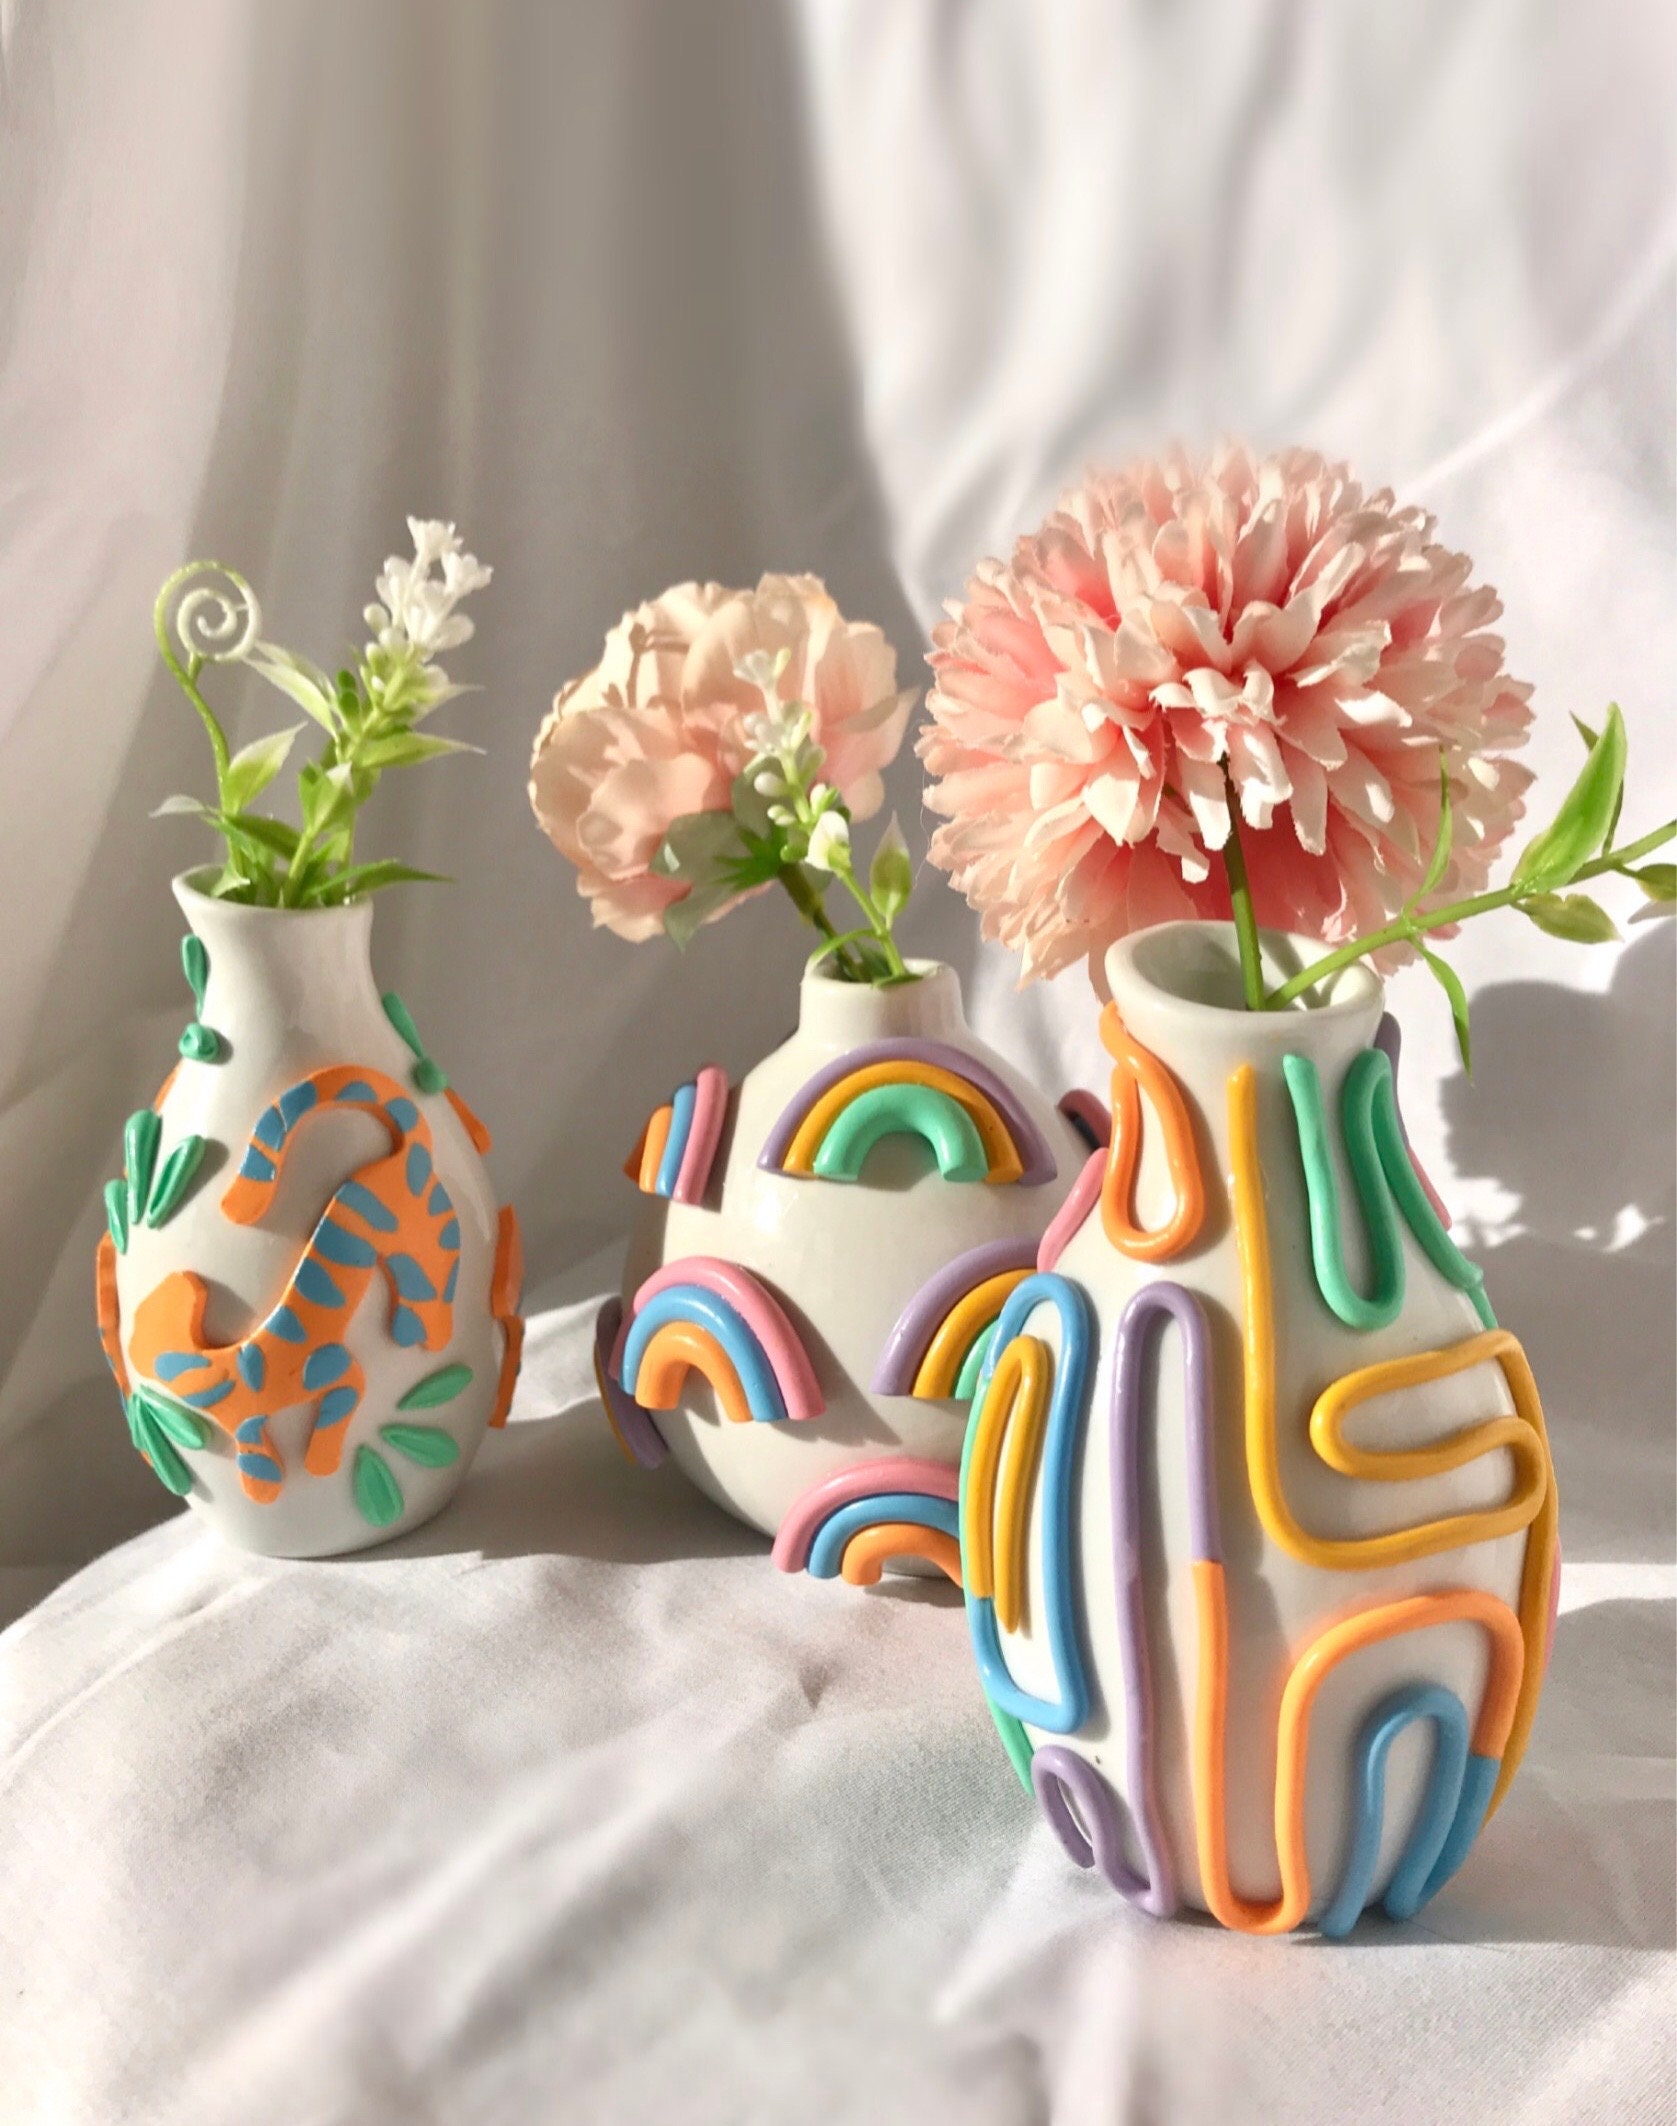 Vase Ceramic Flower Home White Decor Decorative Vases Modern Pot Small Vintage 